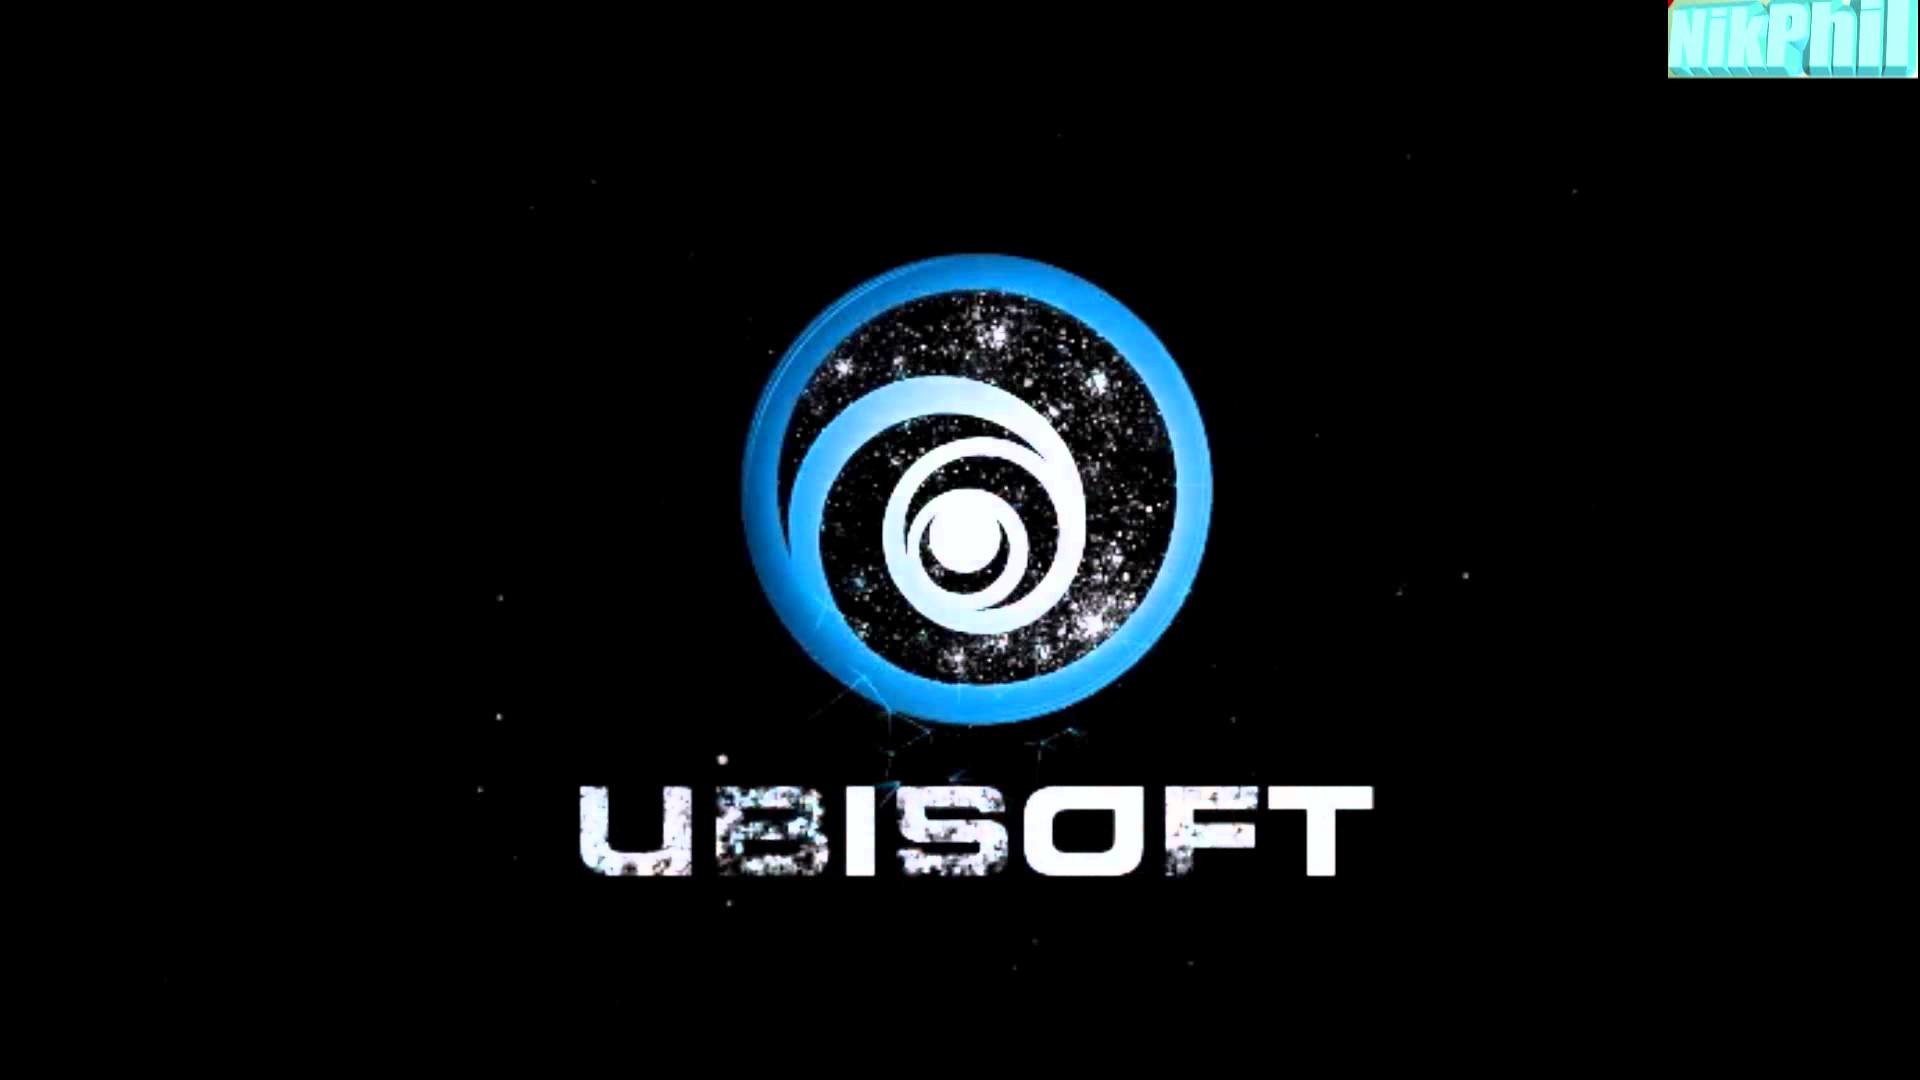 Watch Dogs Dreamscene 19 Ubisoft Logo-hack